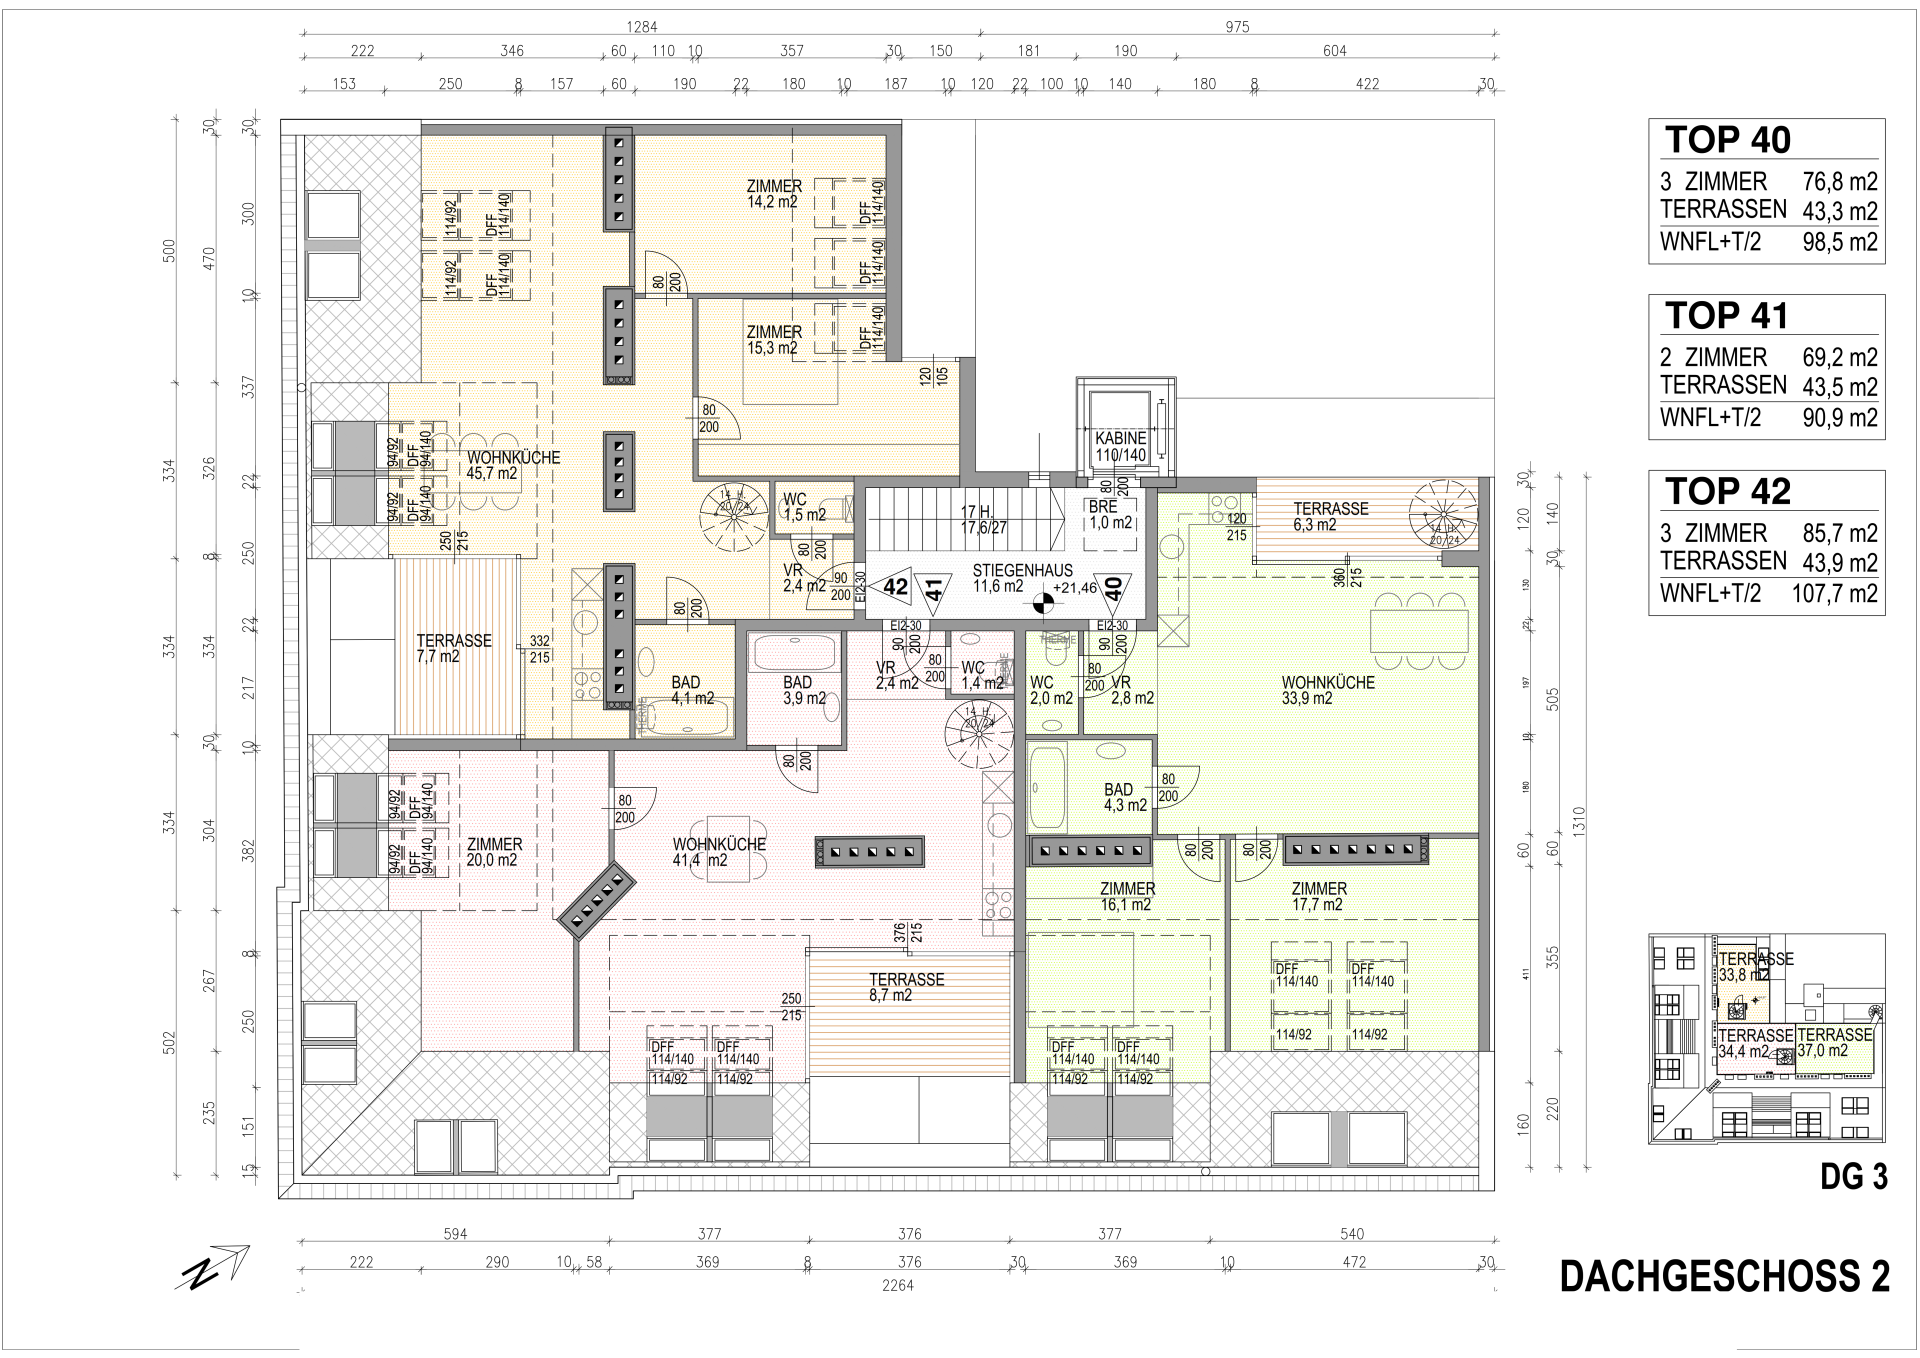 Floor plan DG 2 - 3 units